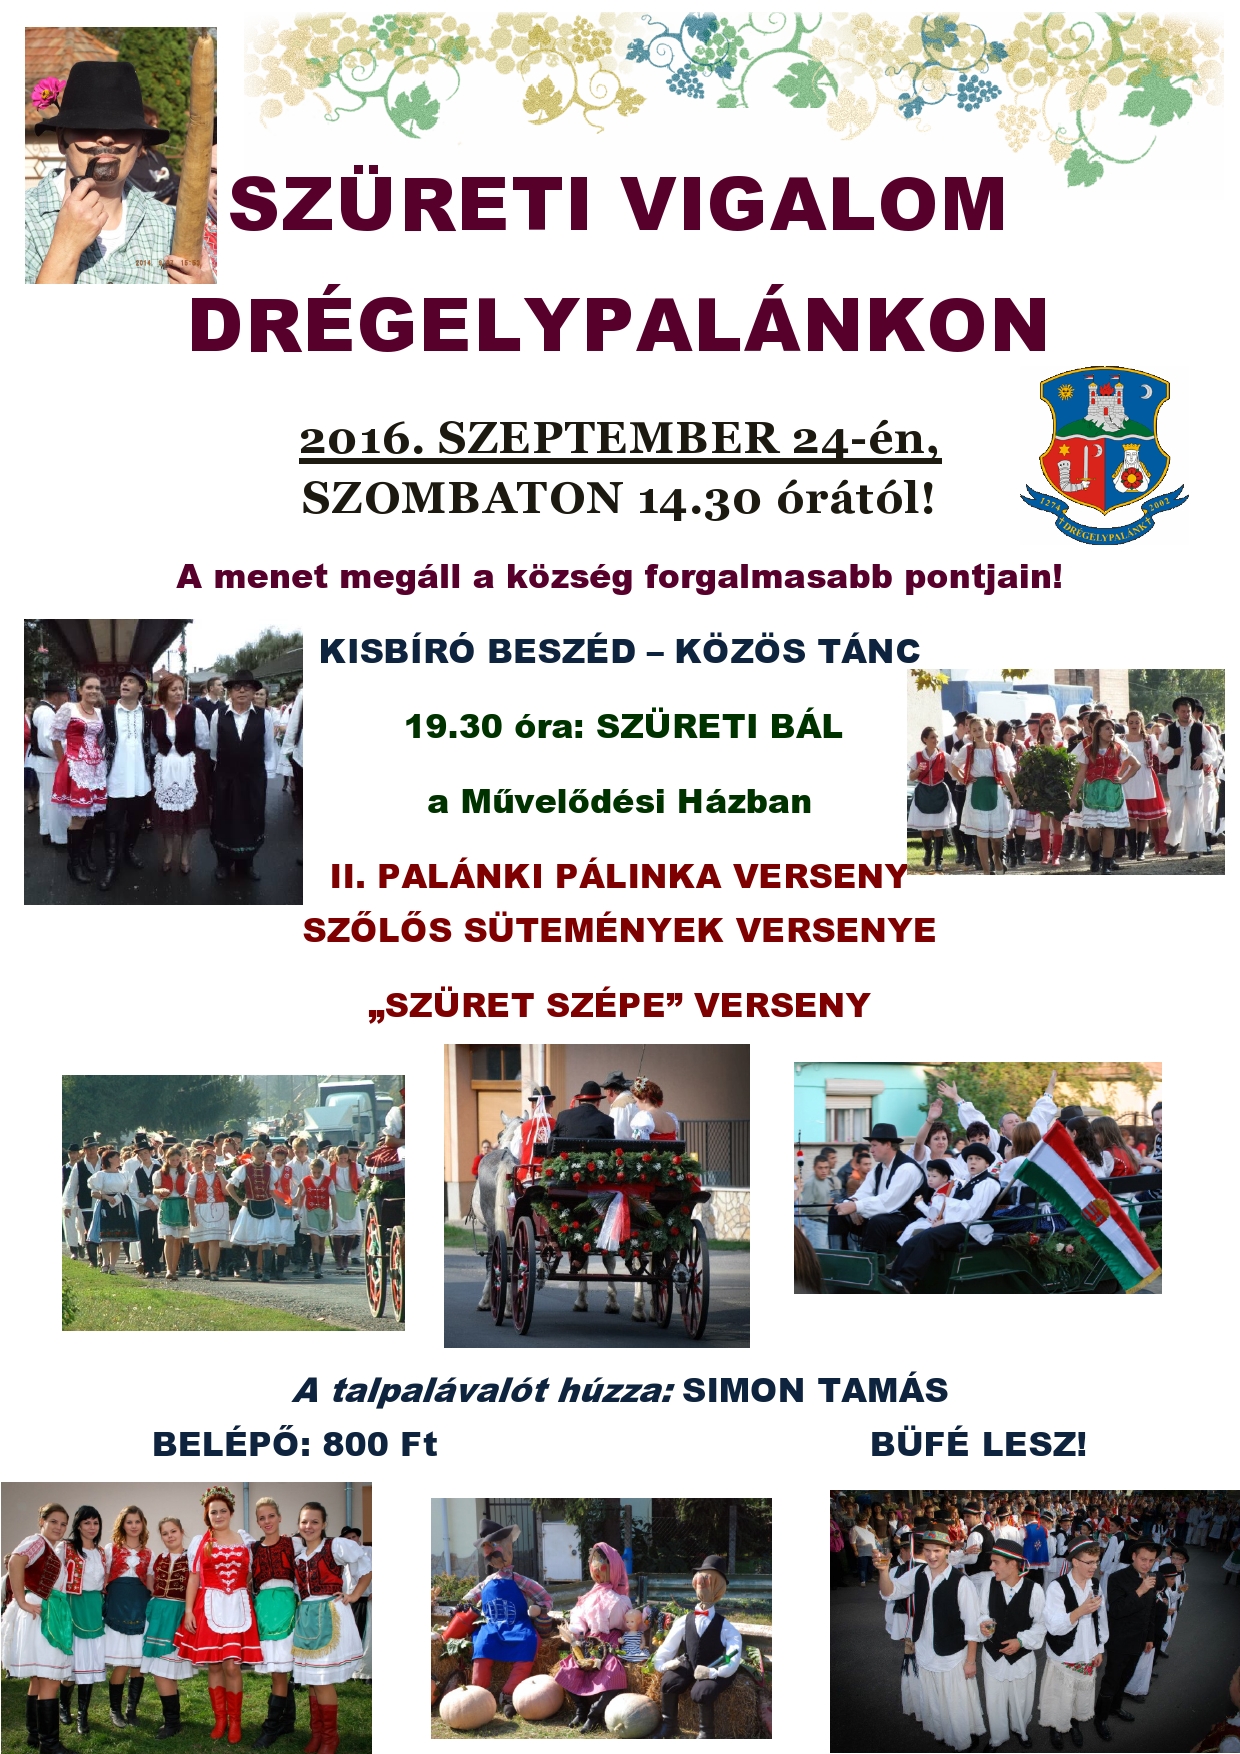 kepszureti-vigalom-dregelypalank-2016-page0001